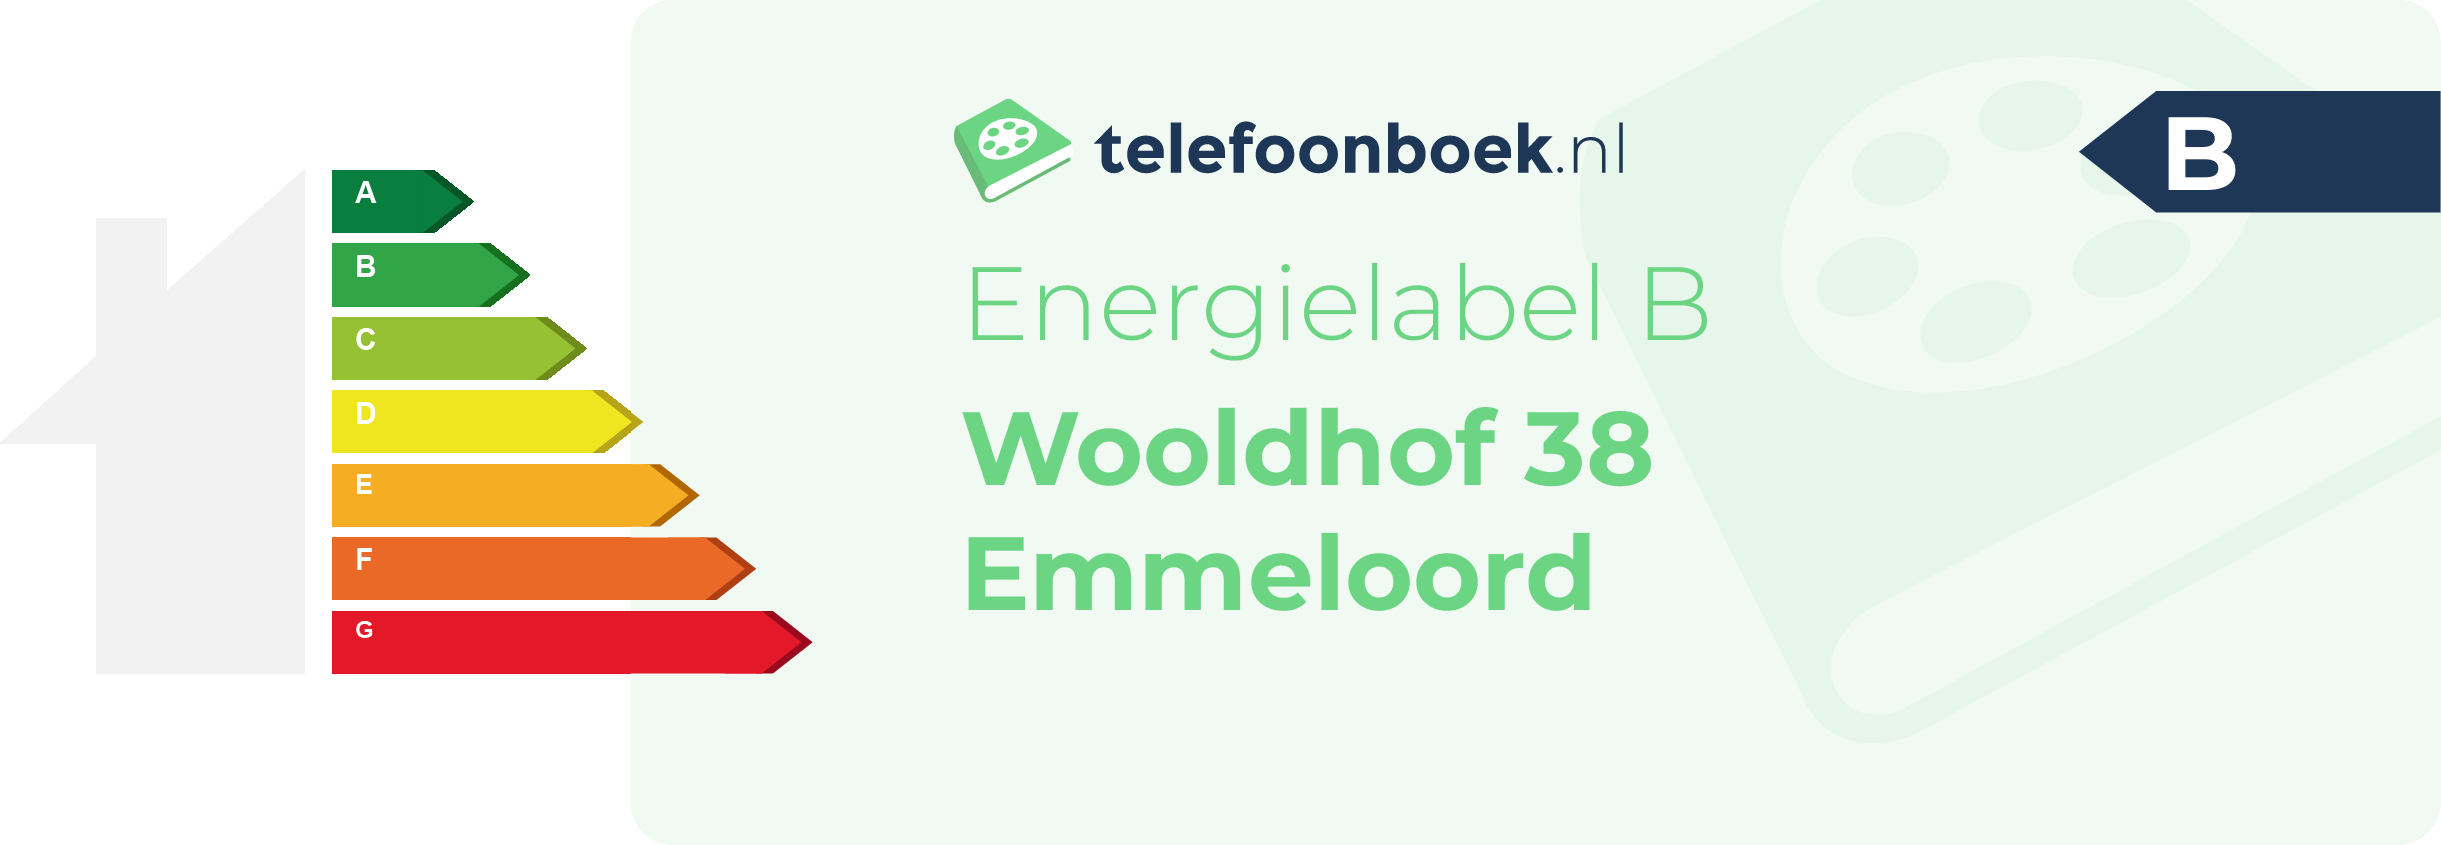 Energielabel Wooldhof 38 Emmeloord